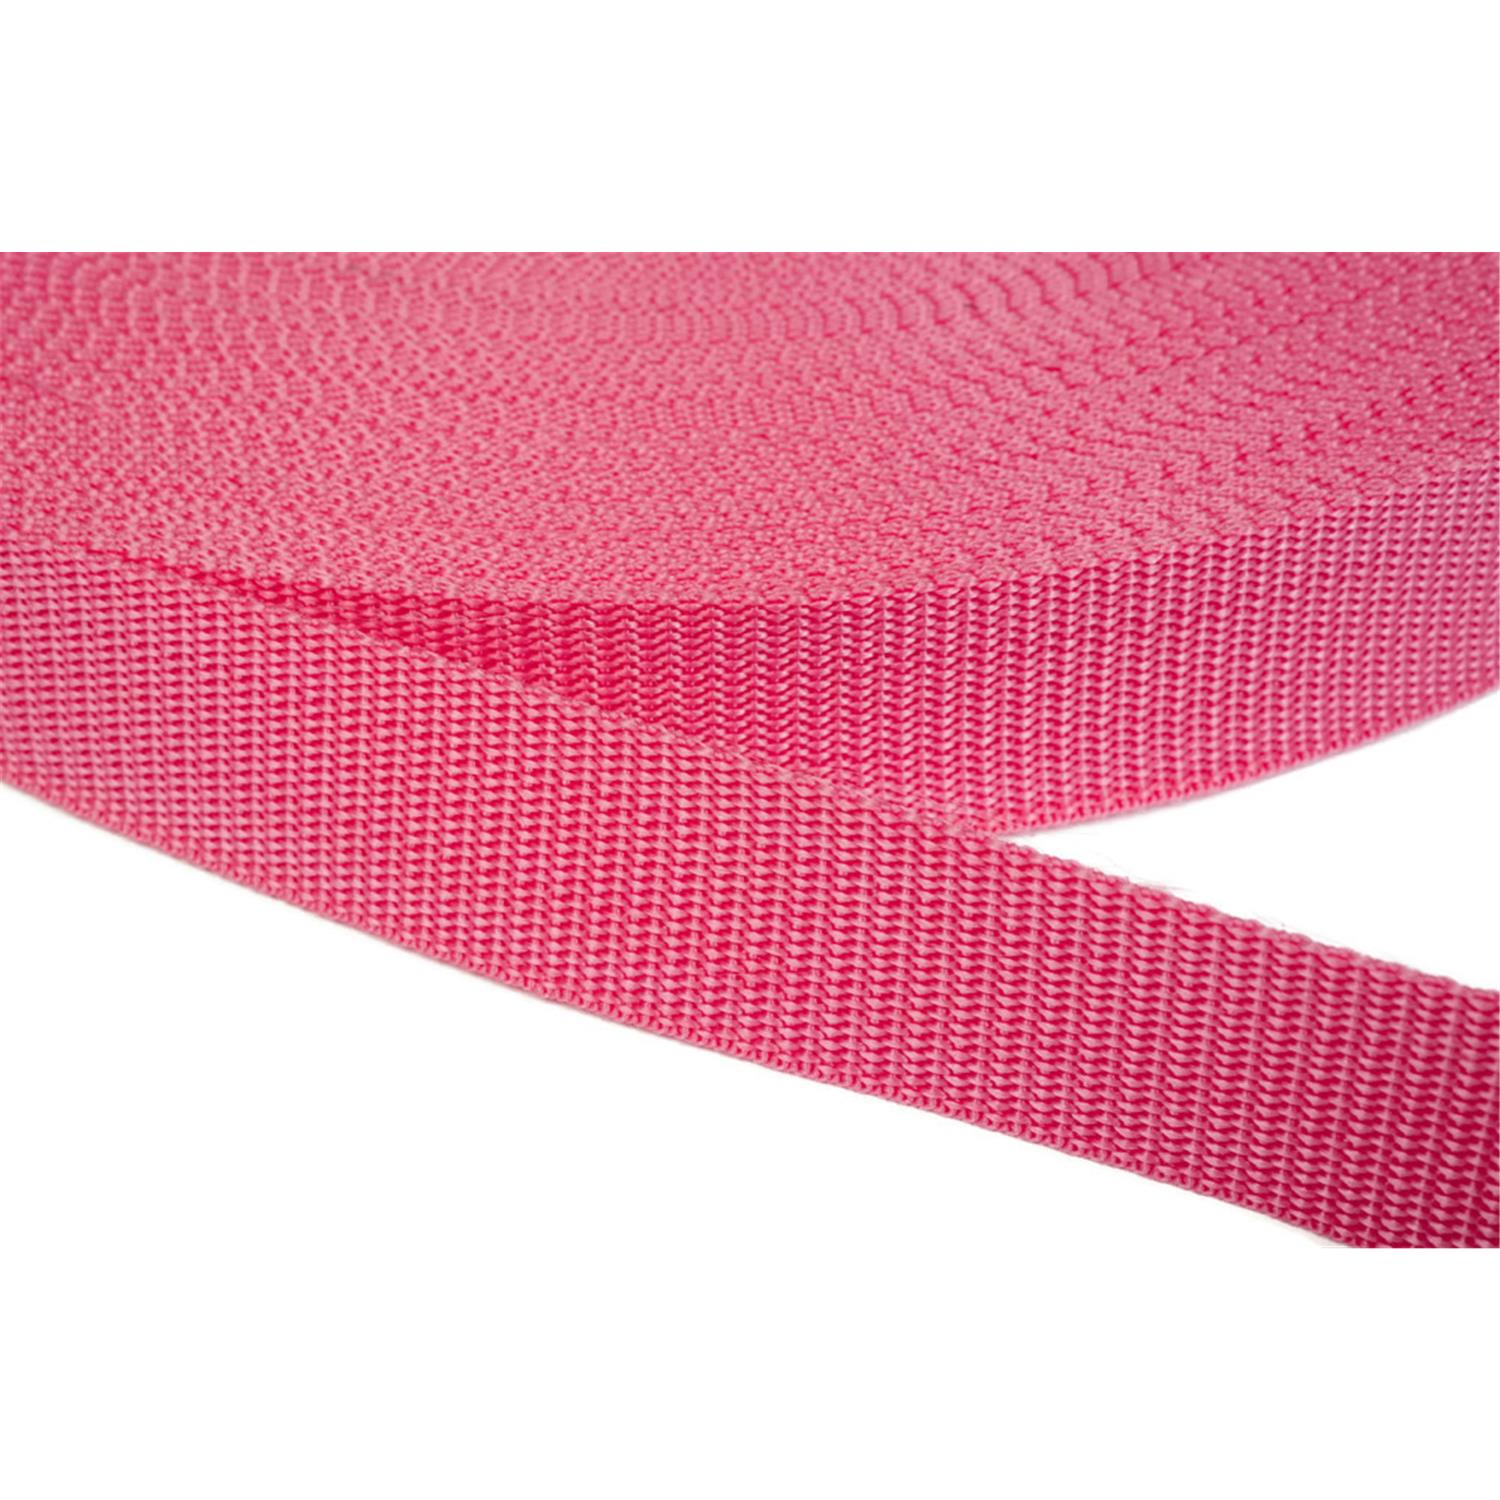 Gurtband 40mm breit aus Polypropylen in 41 Farben 13 - pink 12 Meter